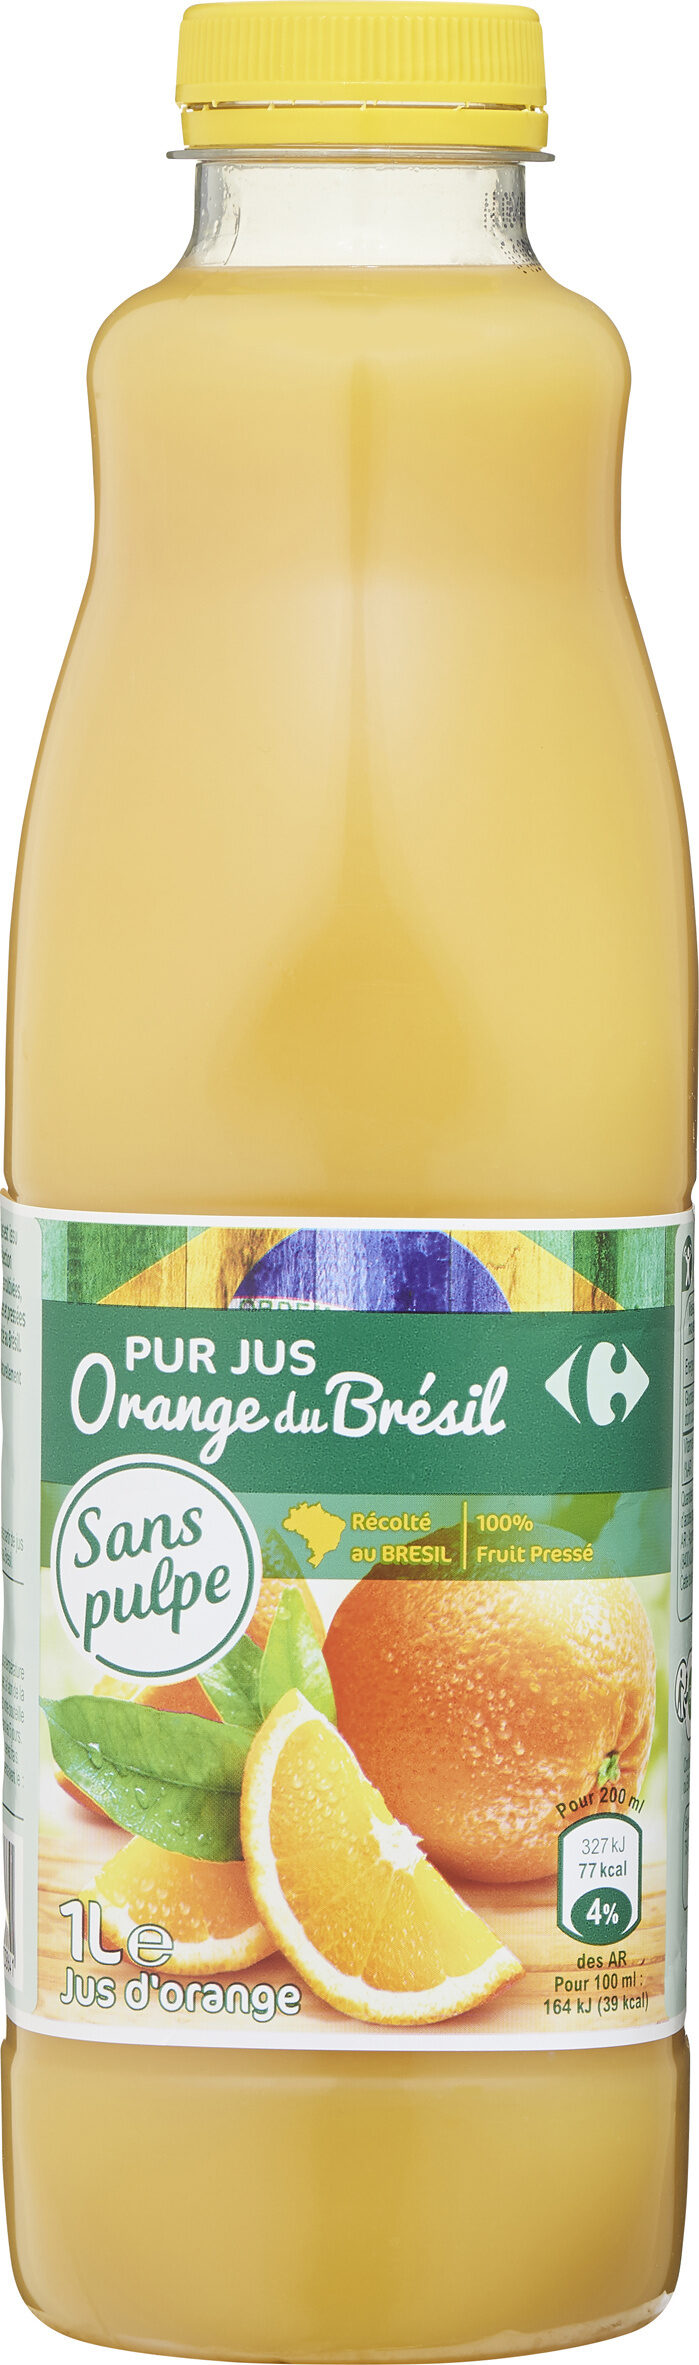 100% pur jus orange du brésil sans pulpe - Producte - fr